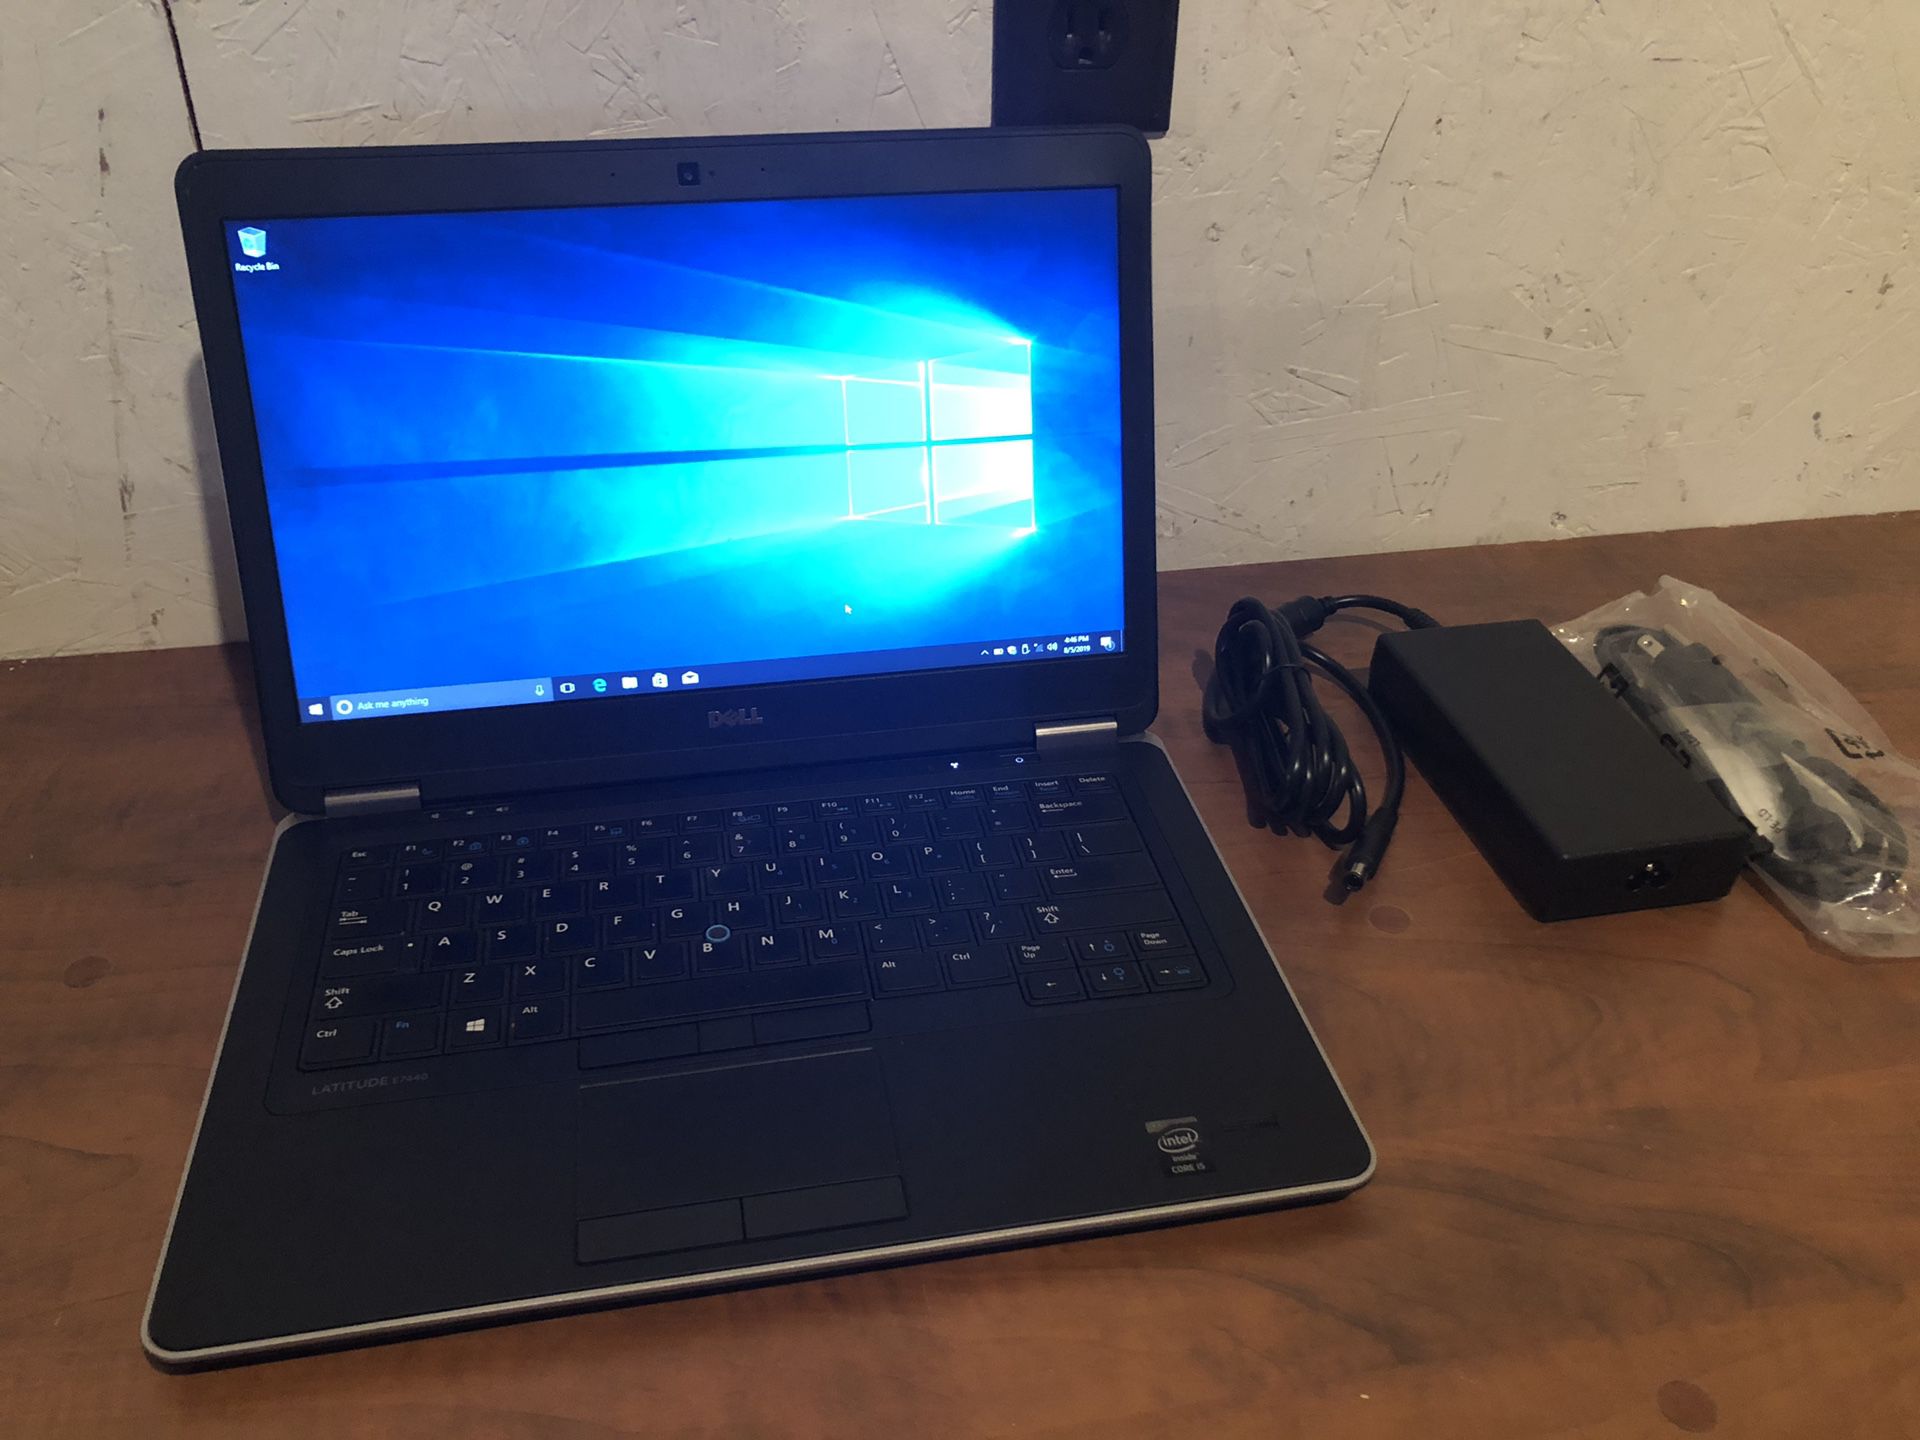 Dell Latitude E7440 14" Laptop - i5-4300u CPU✔8GB RAM✔128GB SSD✔Wi-Fi✔WIN 10 PRO